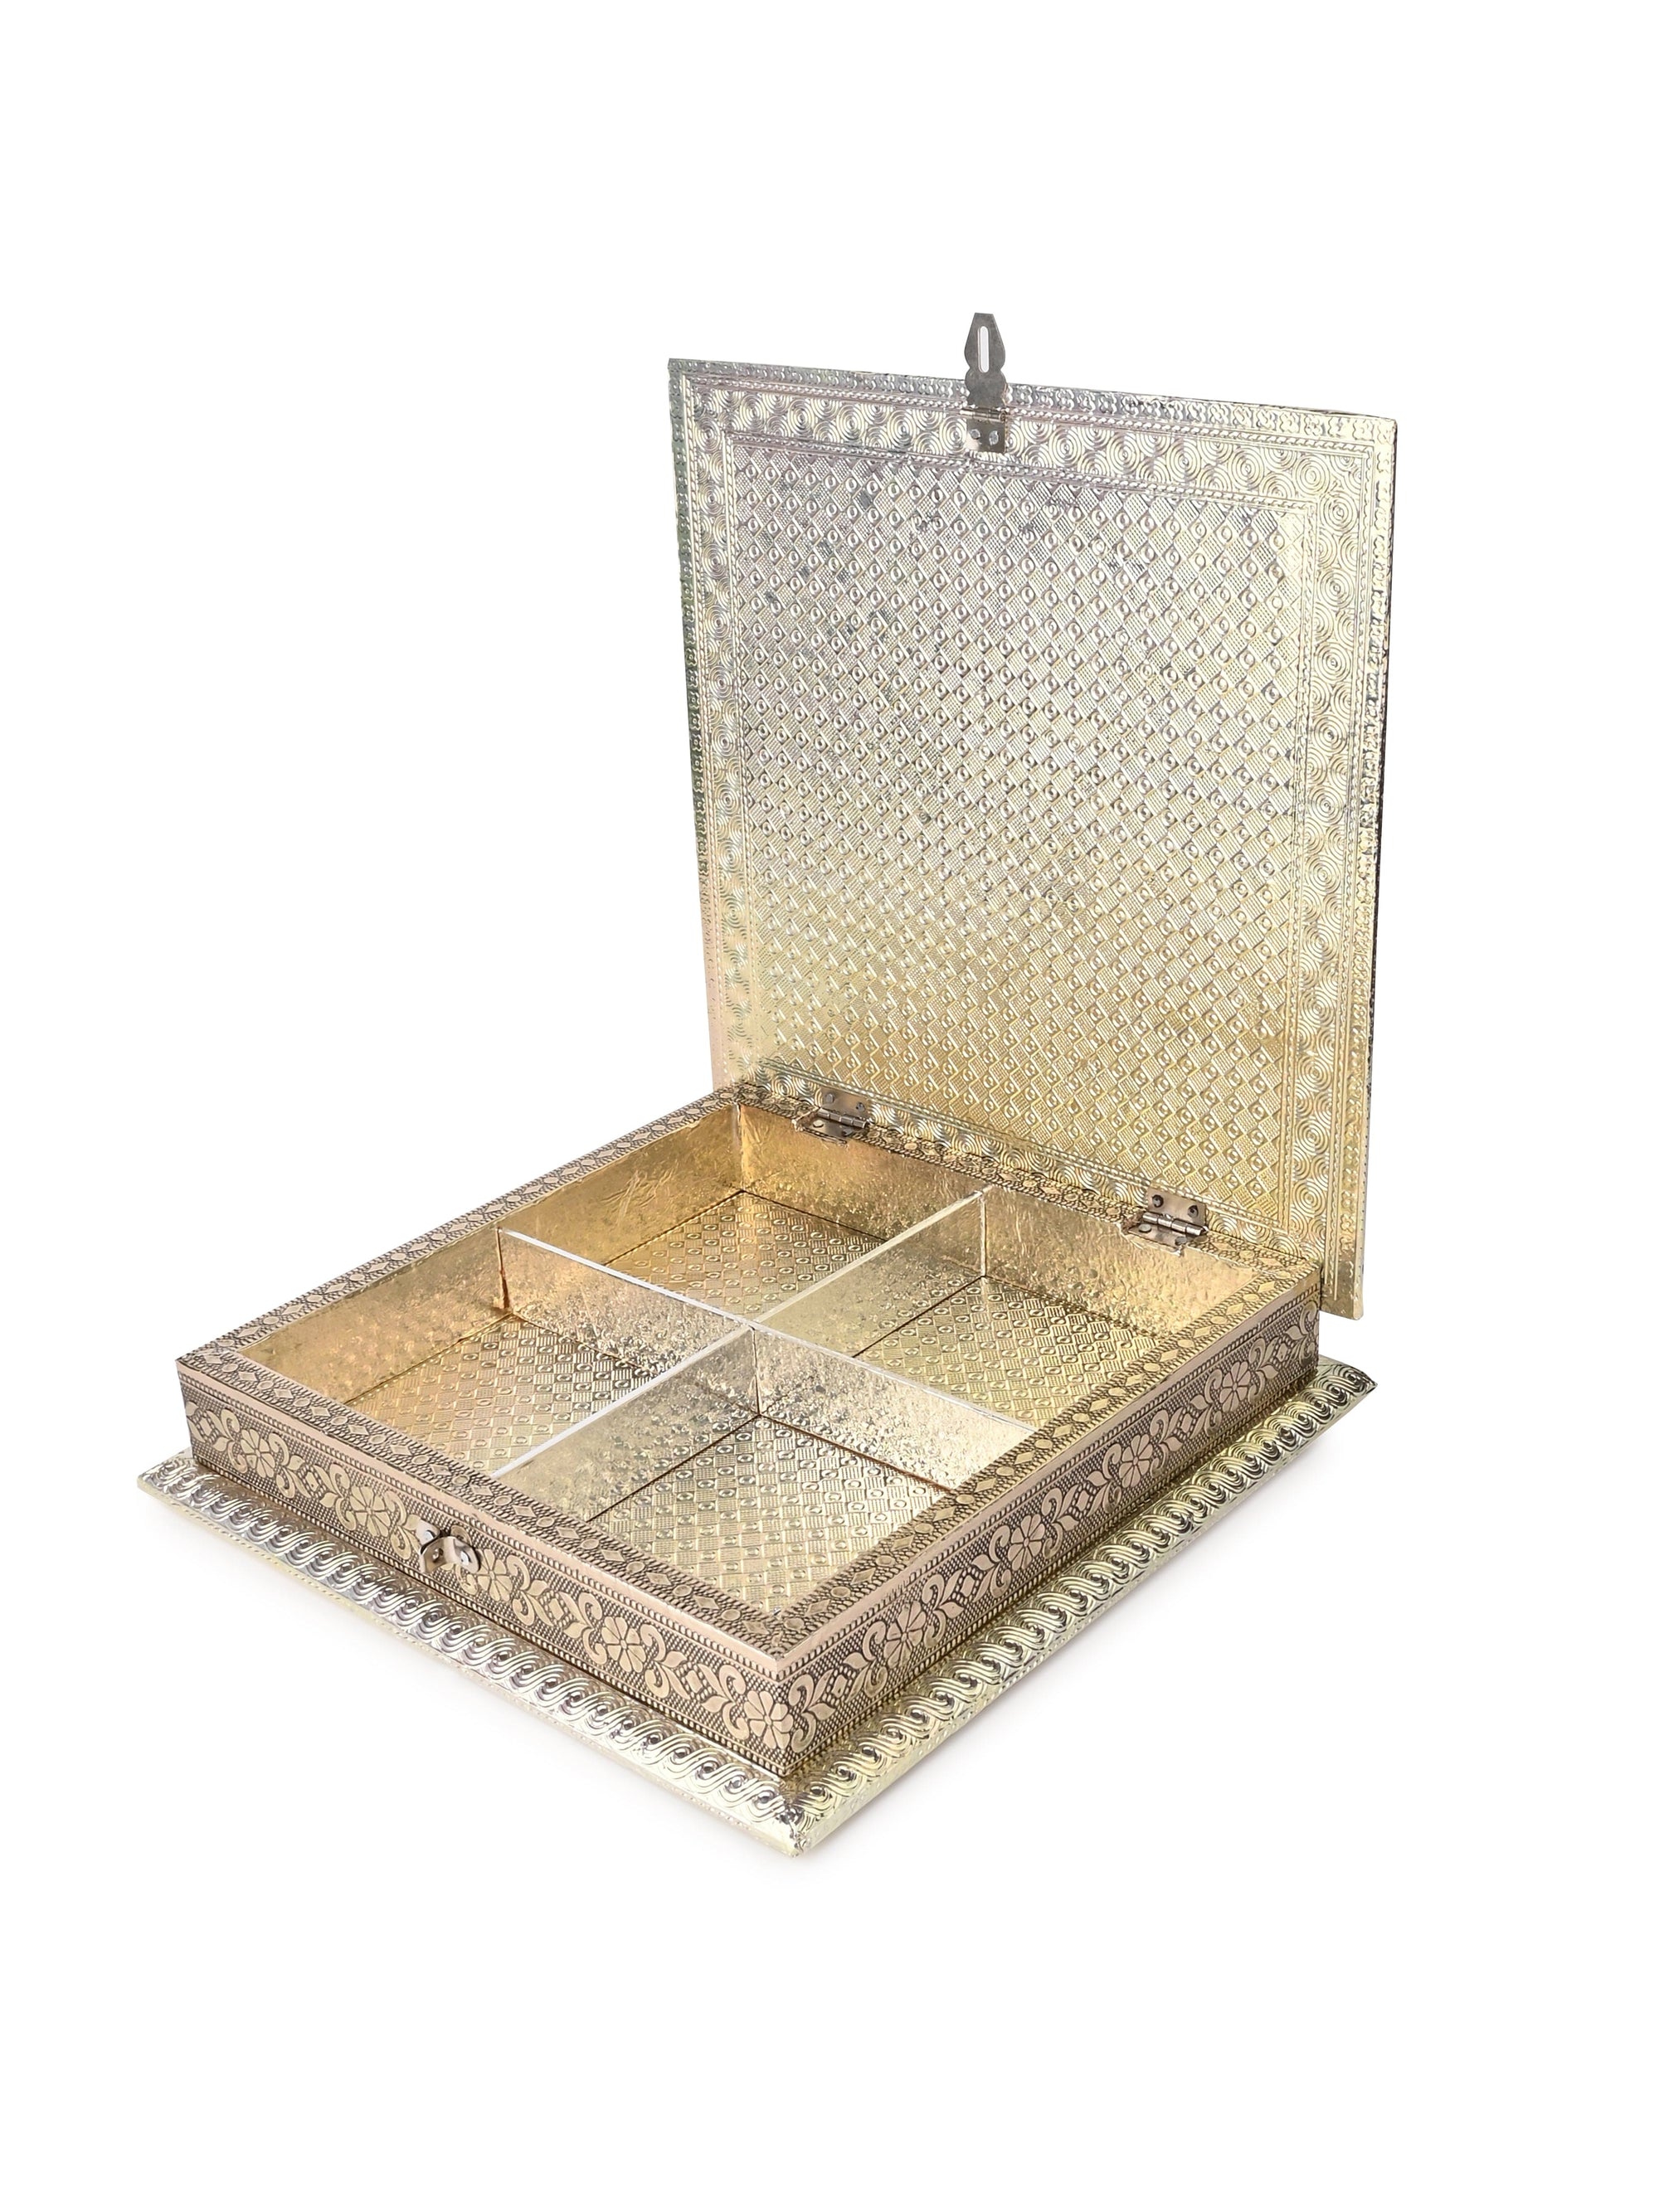 10x10 Inches Handcrafted Meenakari Design Gift Box